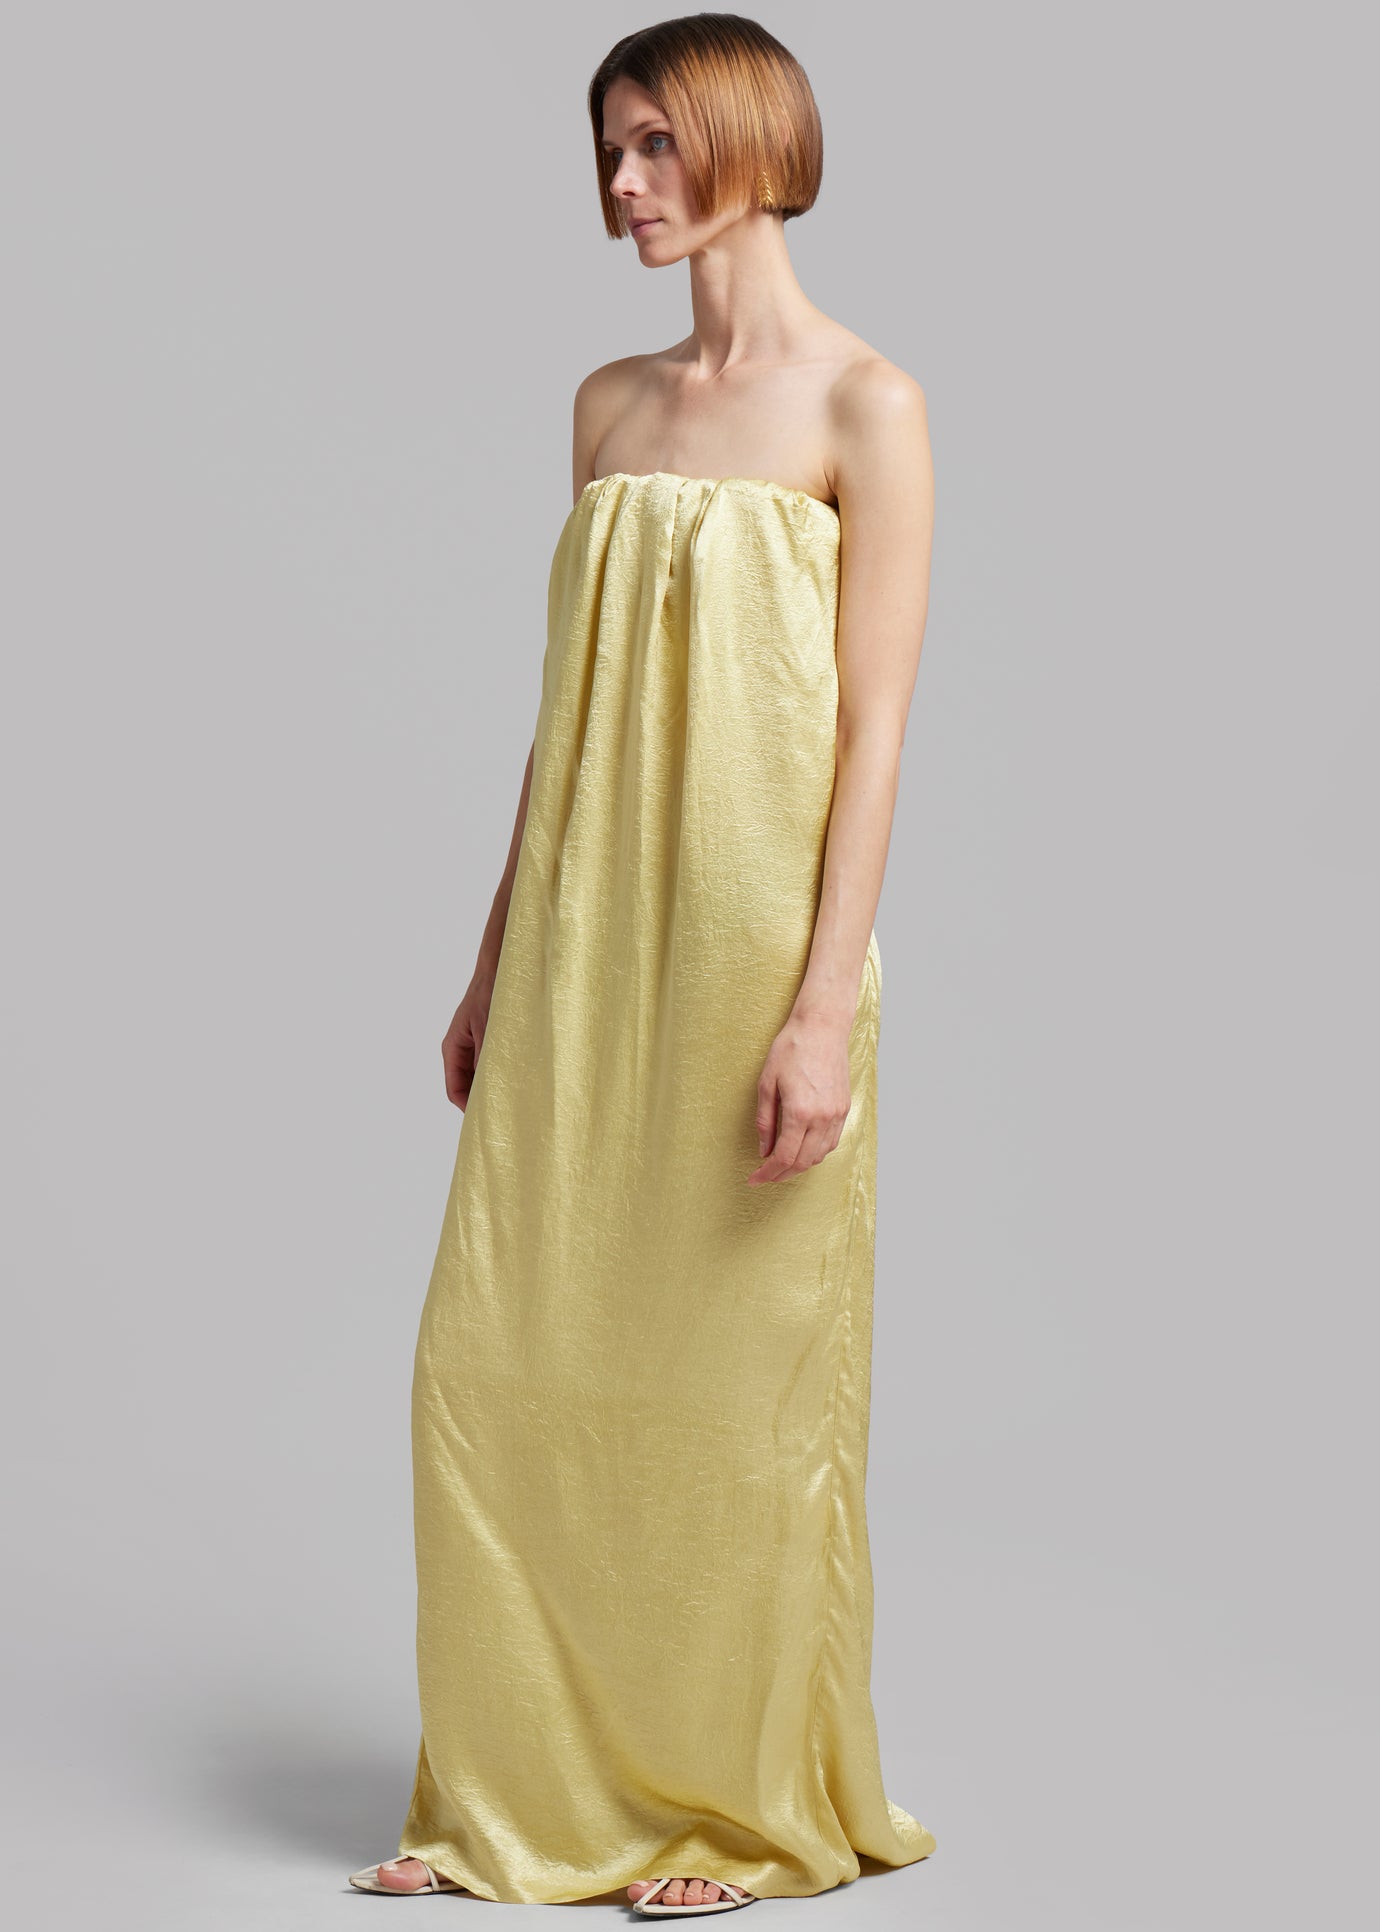 Anna October Tiana Maxi Dress - Yellow